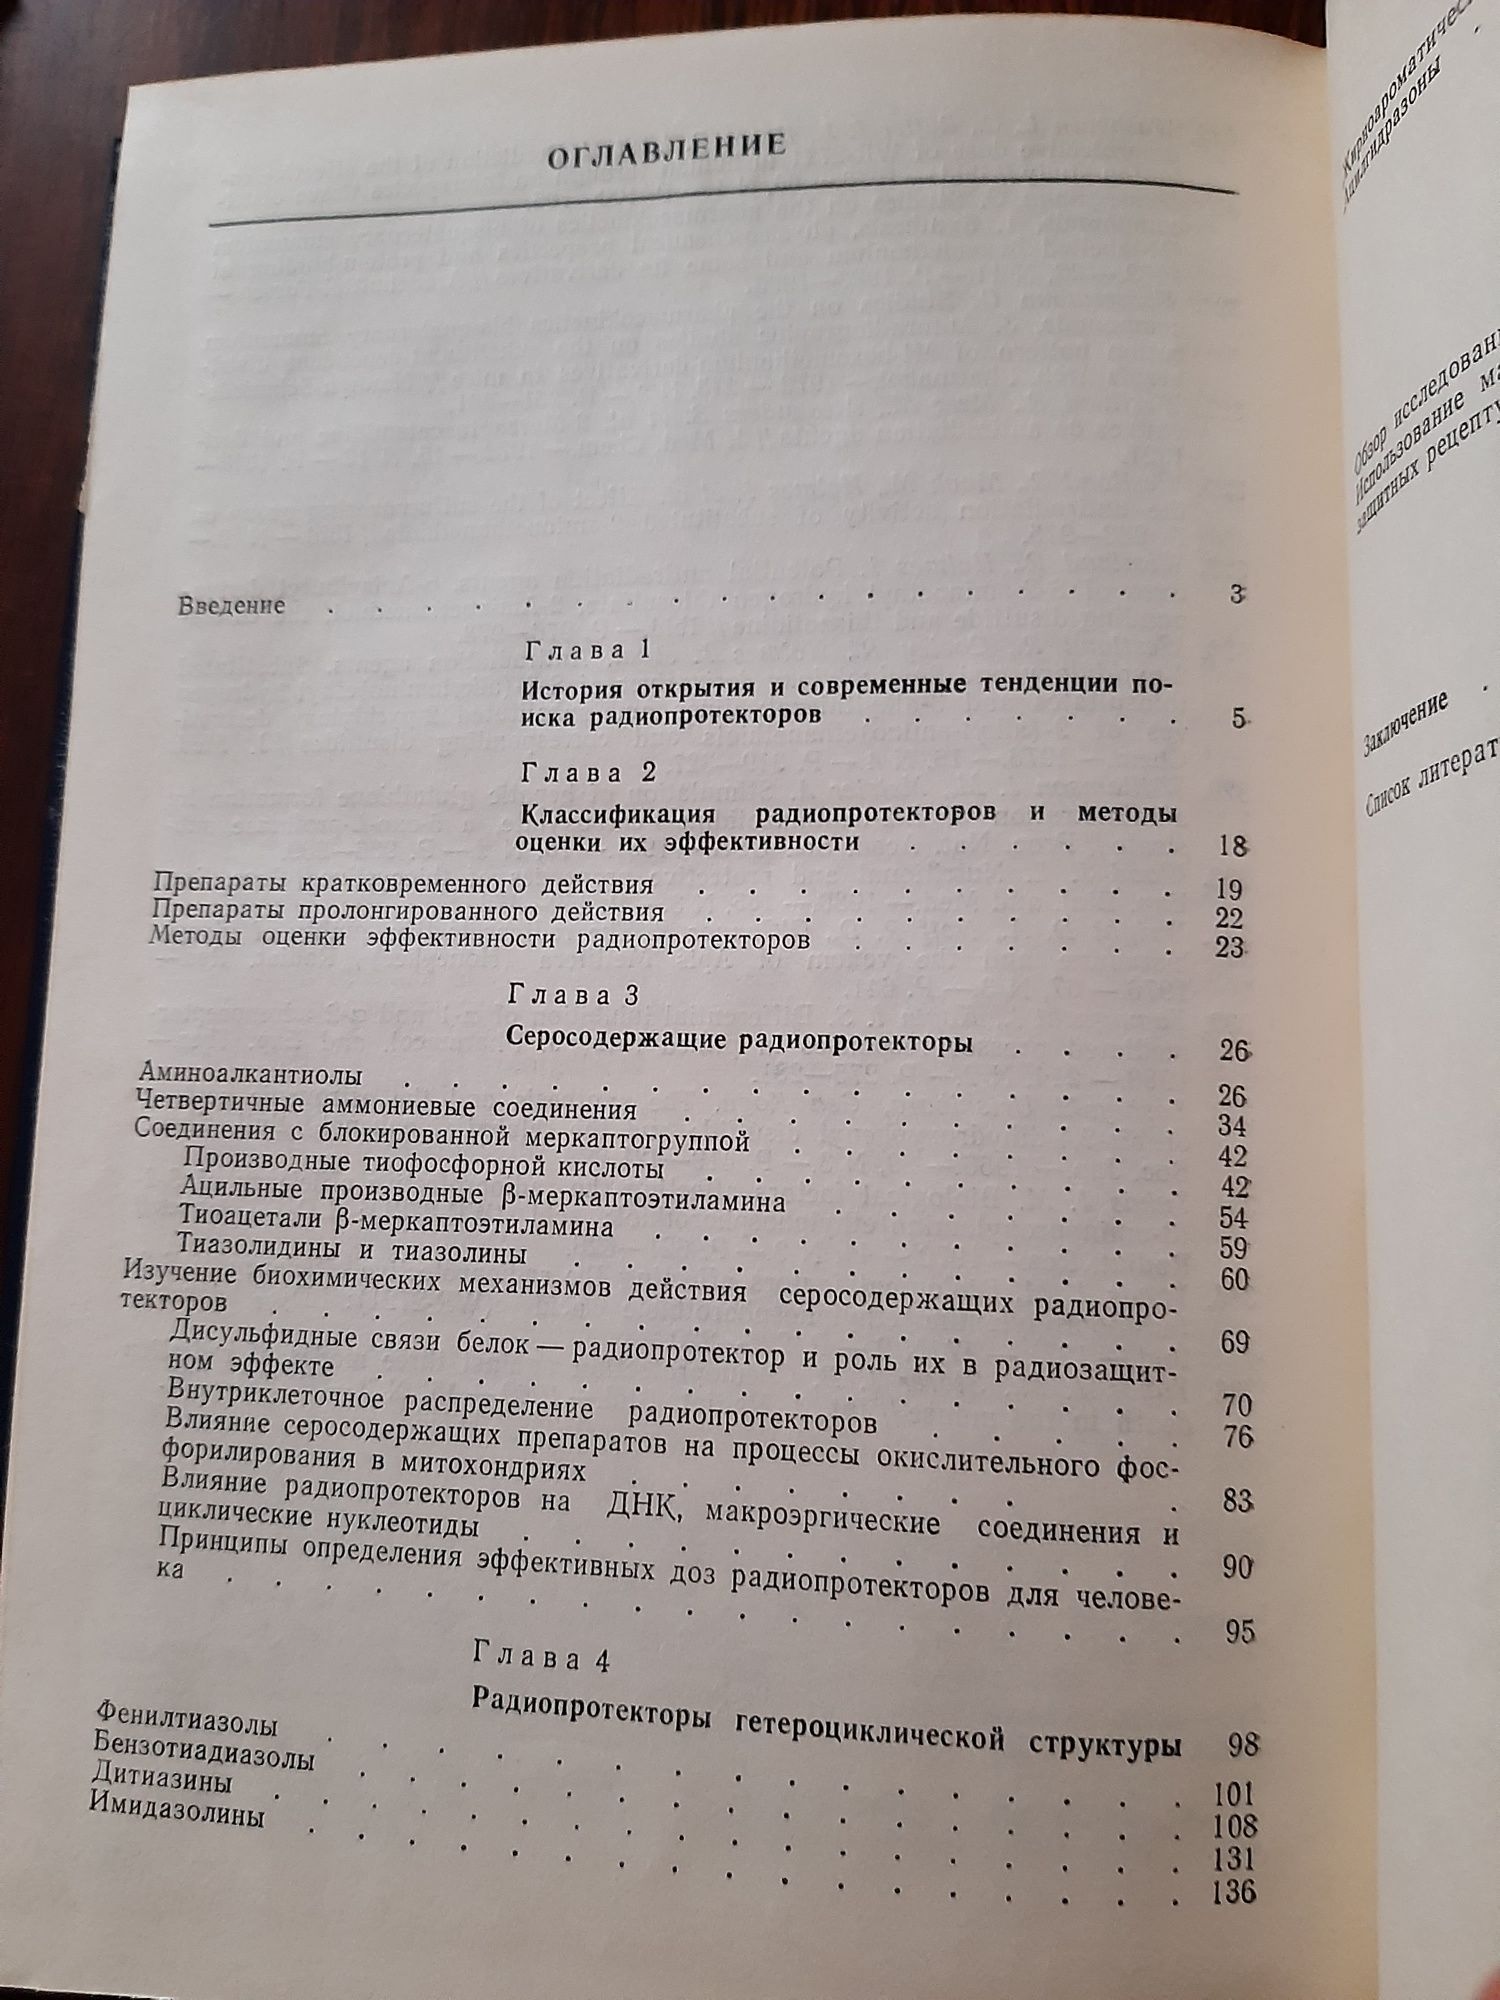 Радиопротектори:структура и функция.Владимиров В.Г. и др.,1989.